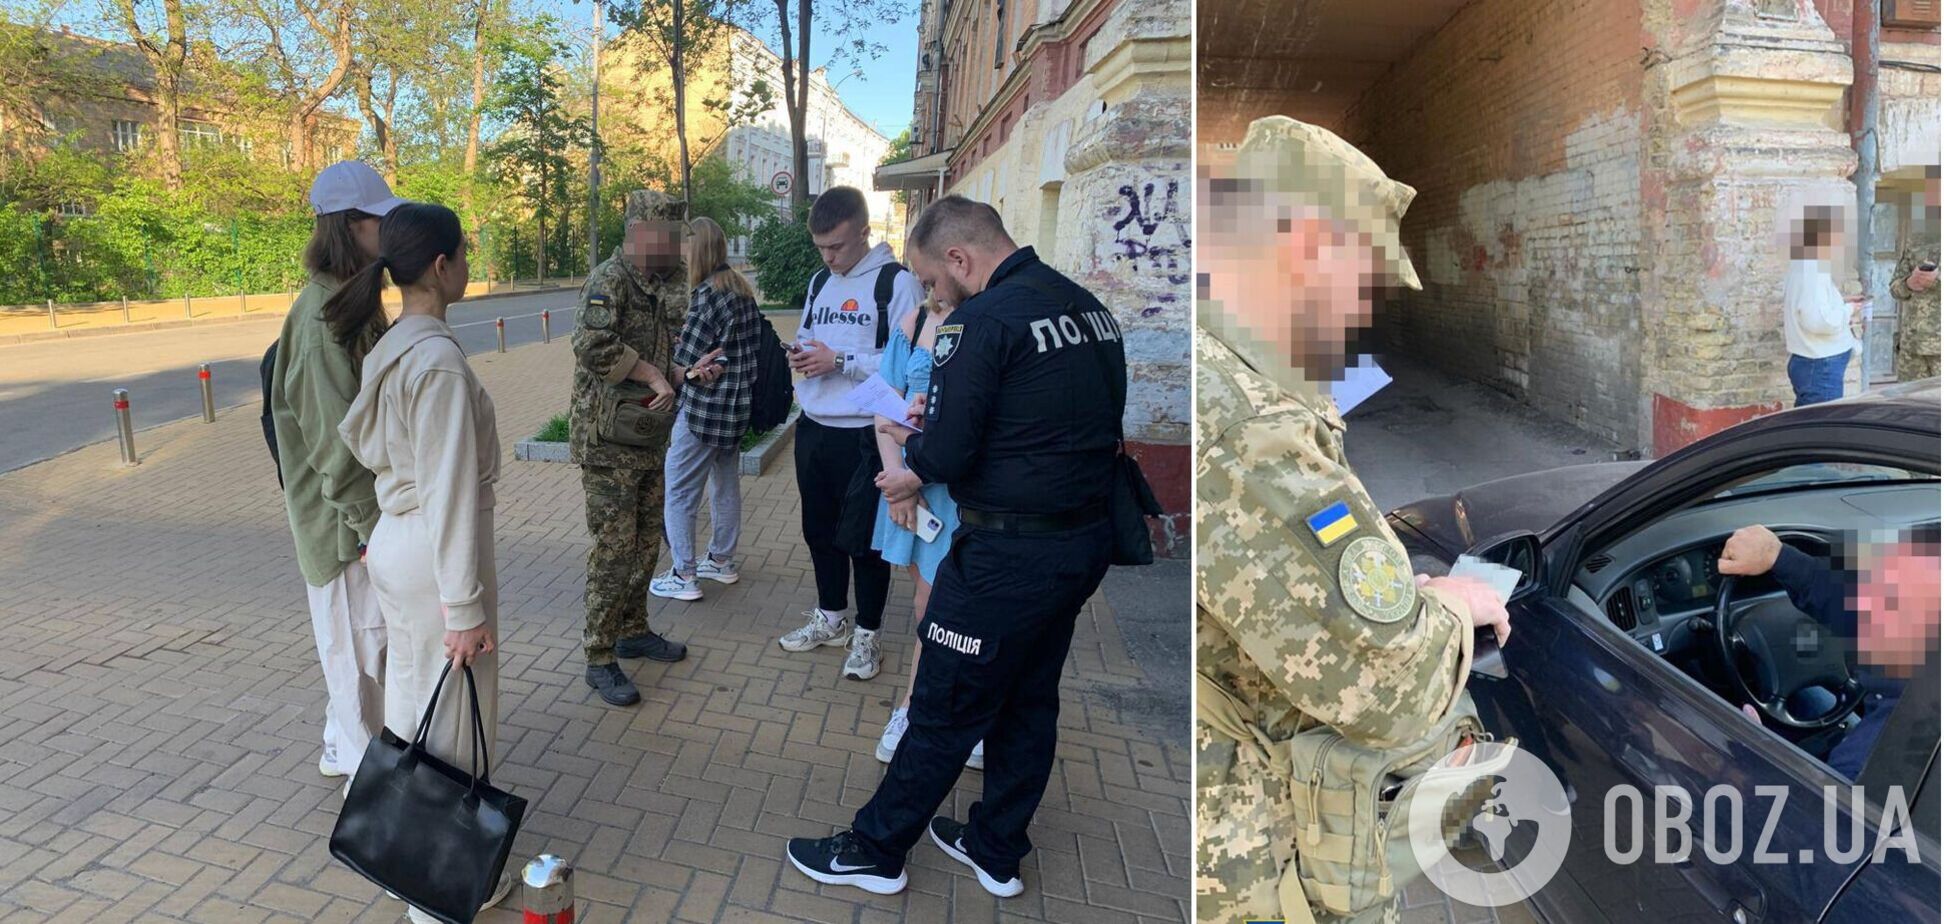 Правоохранители проводят мероприятия по обеспечению безопасности в центре Киева